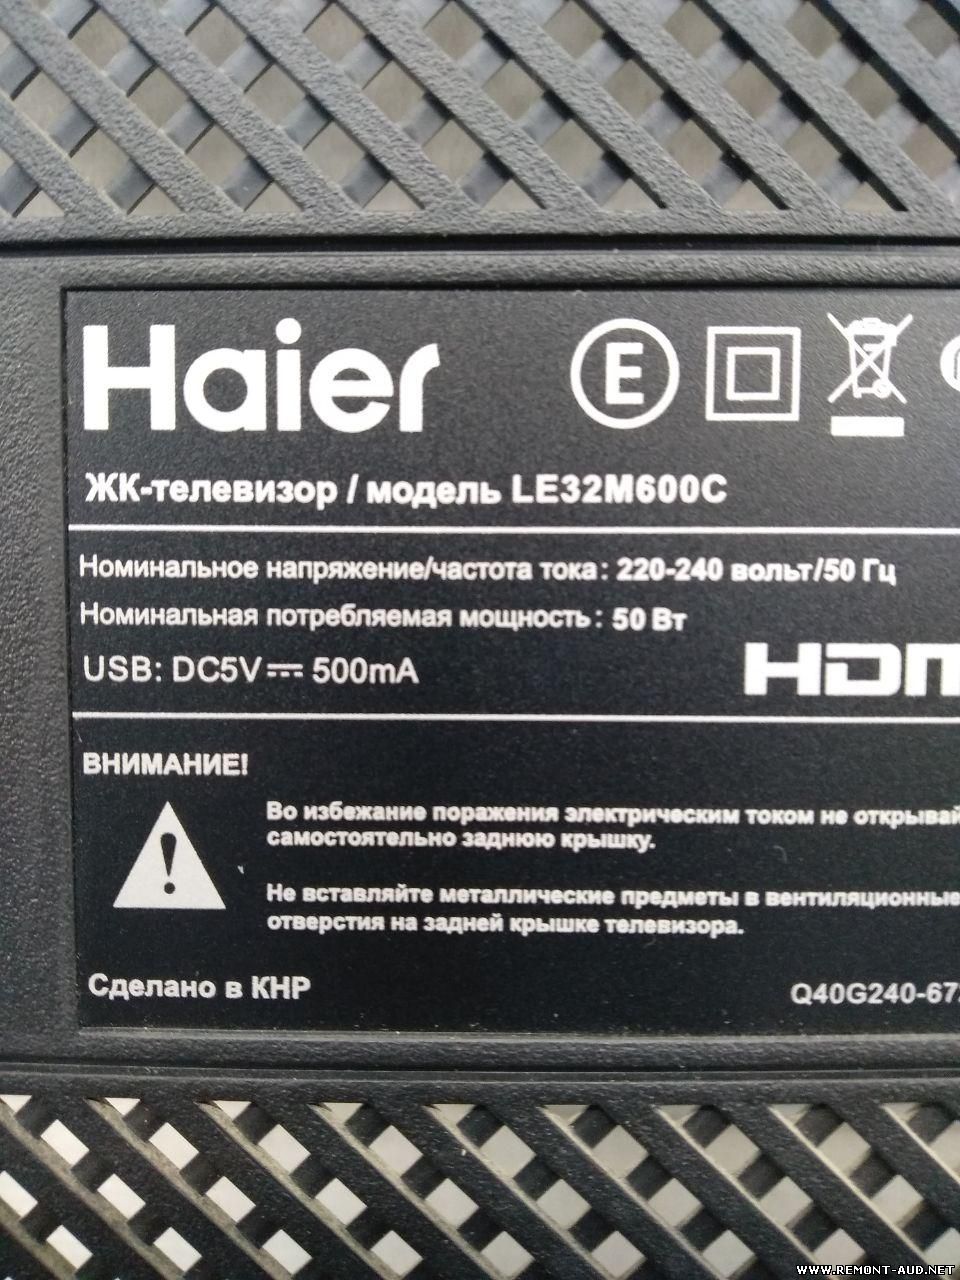 Haier телевизор пароль. Haier le32m600. Haier le32m600 схема. Схема телевизора Haier le32m600. Ssdv3241-zc01-01.